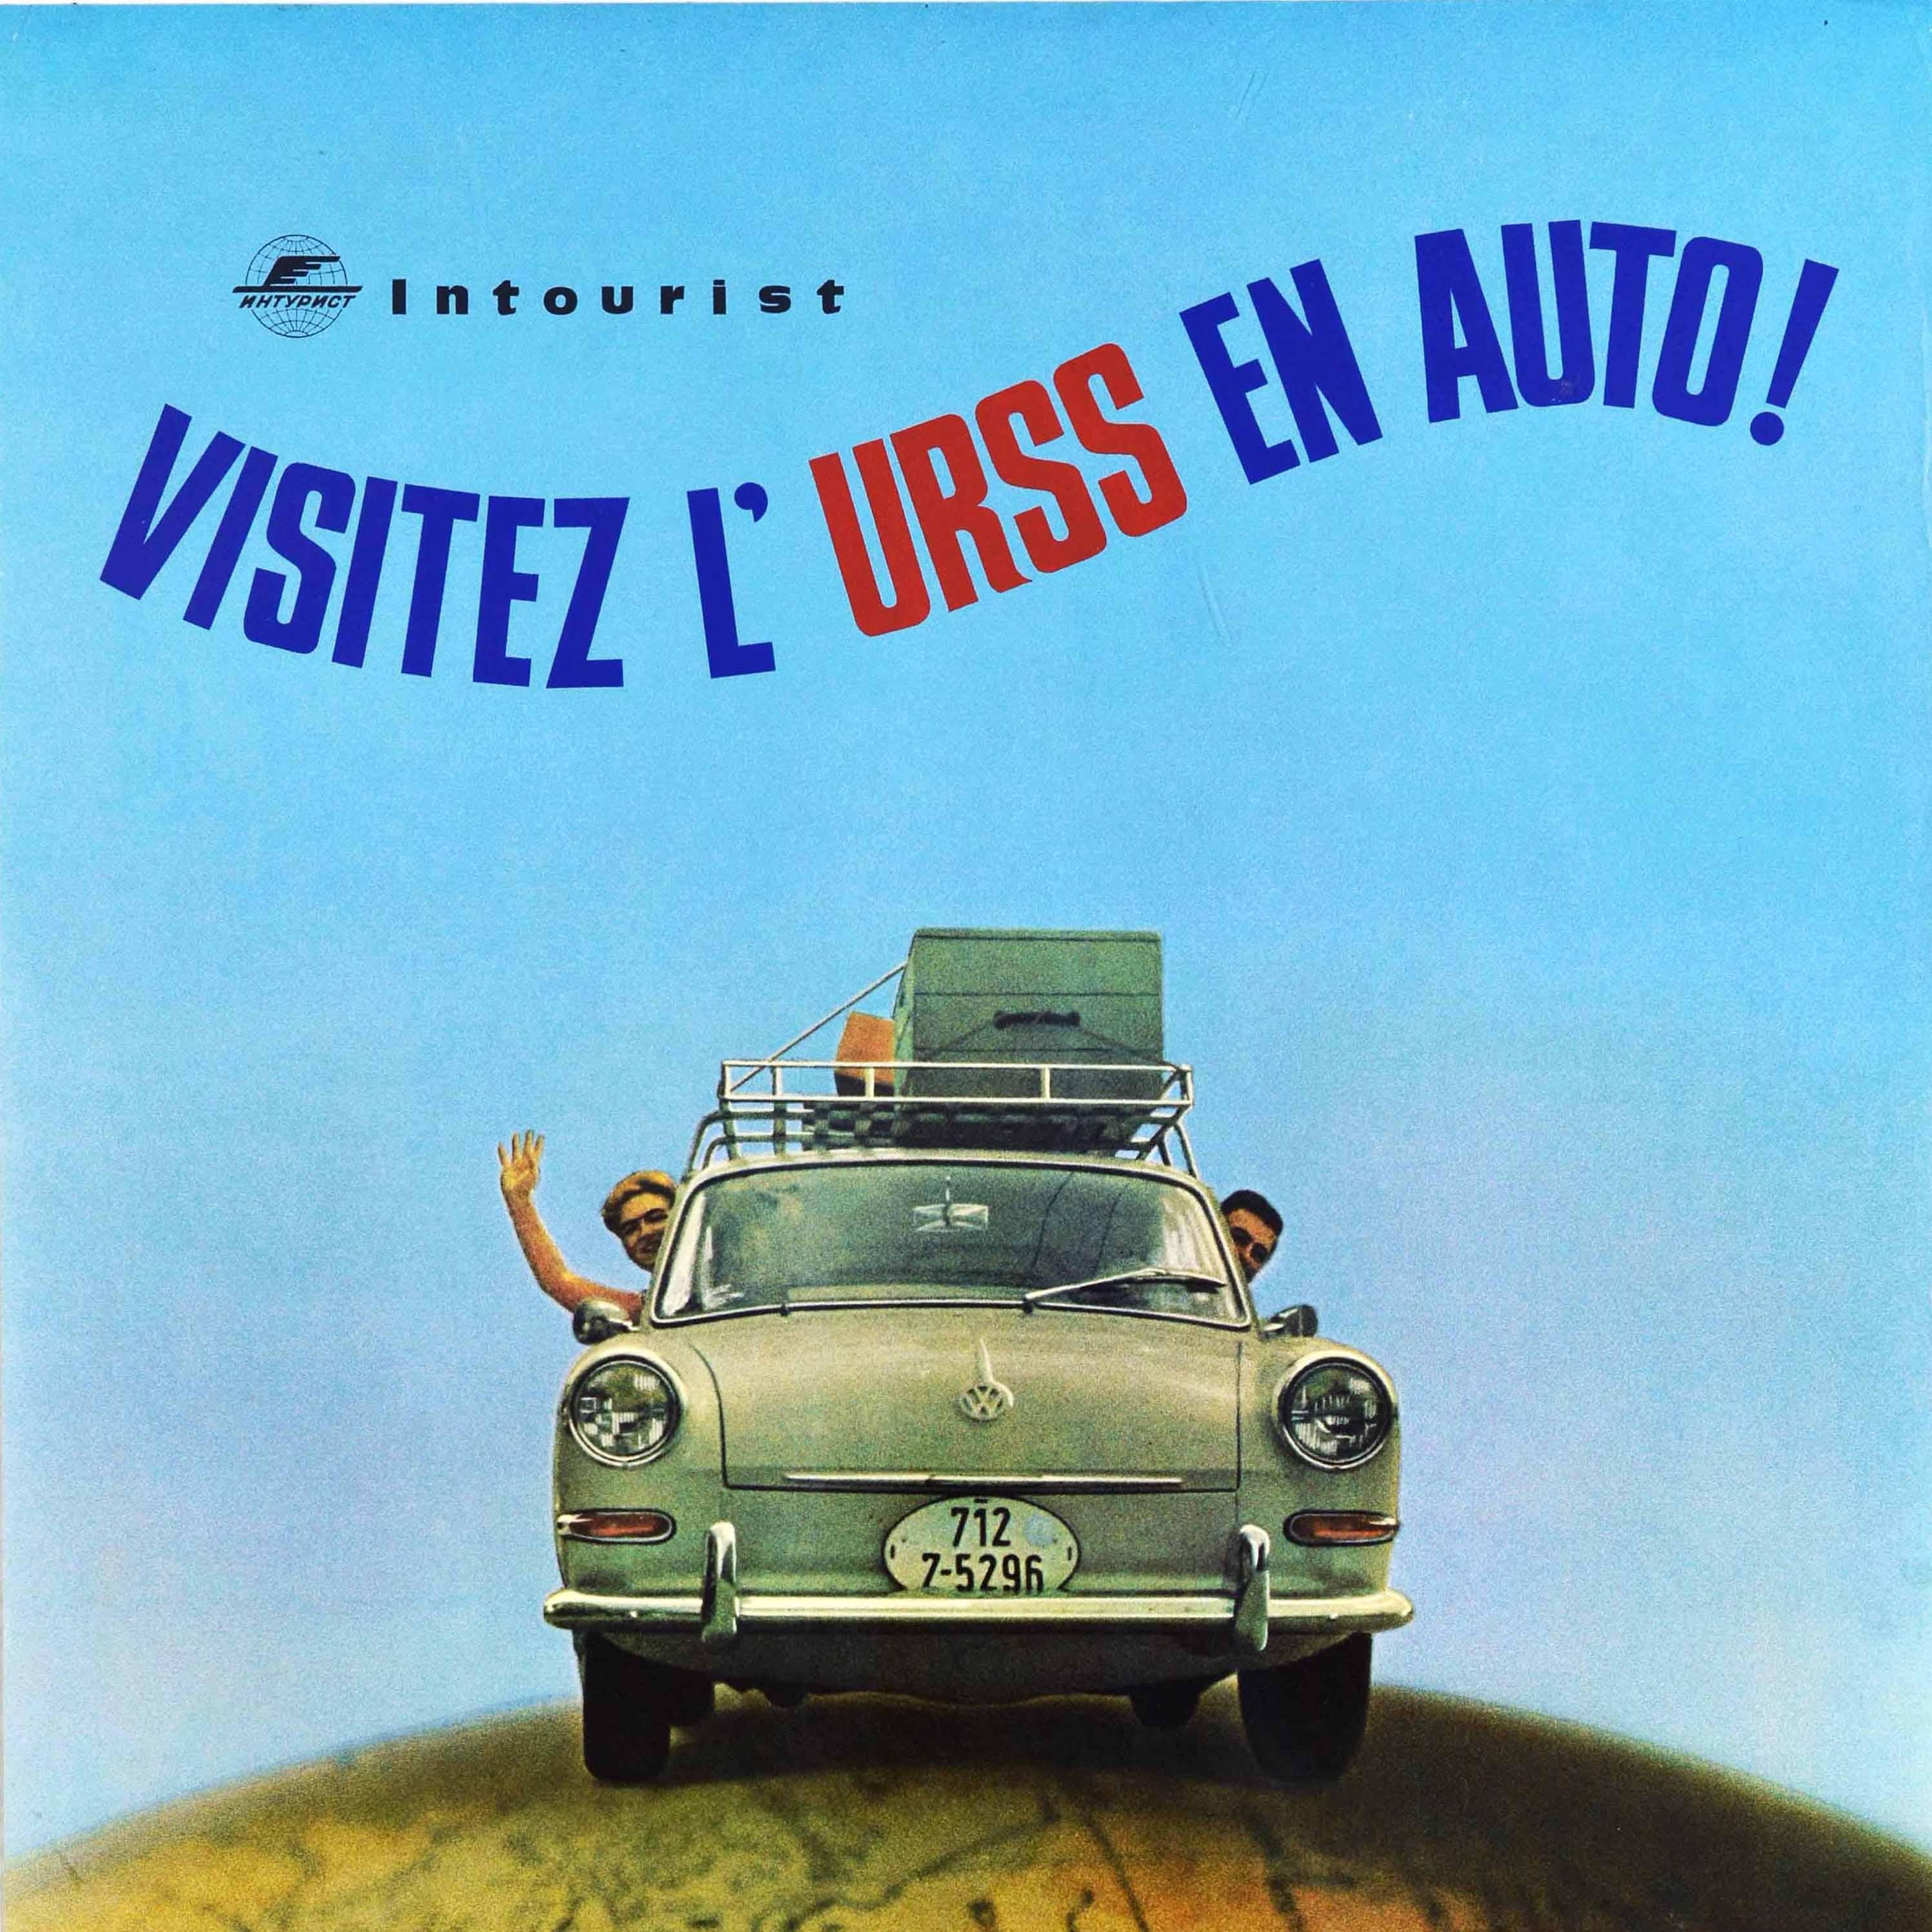 Original Vintage Soviet Travel Poster Visitez L'URSS En Auto VW Intourist USSR - Print by Unknown